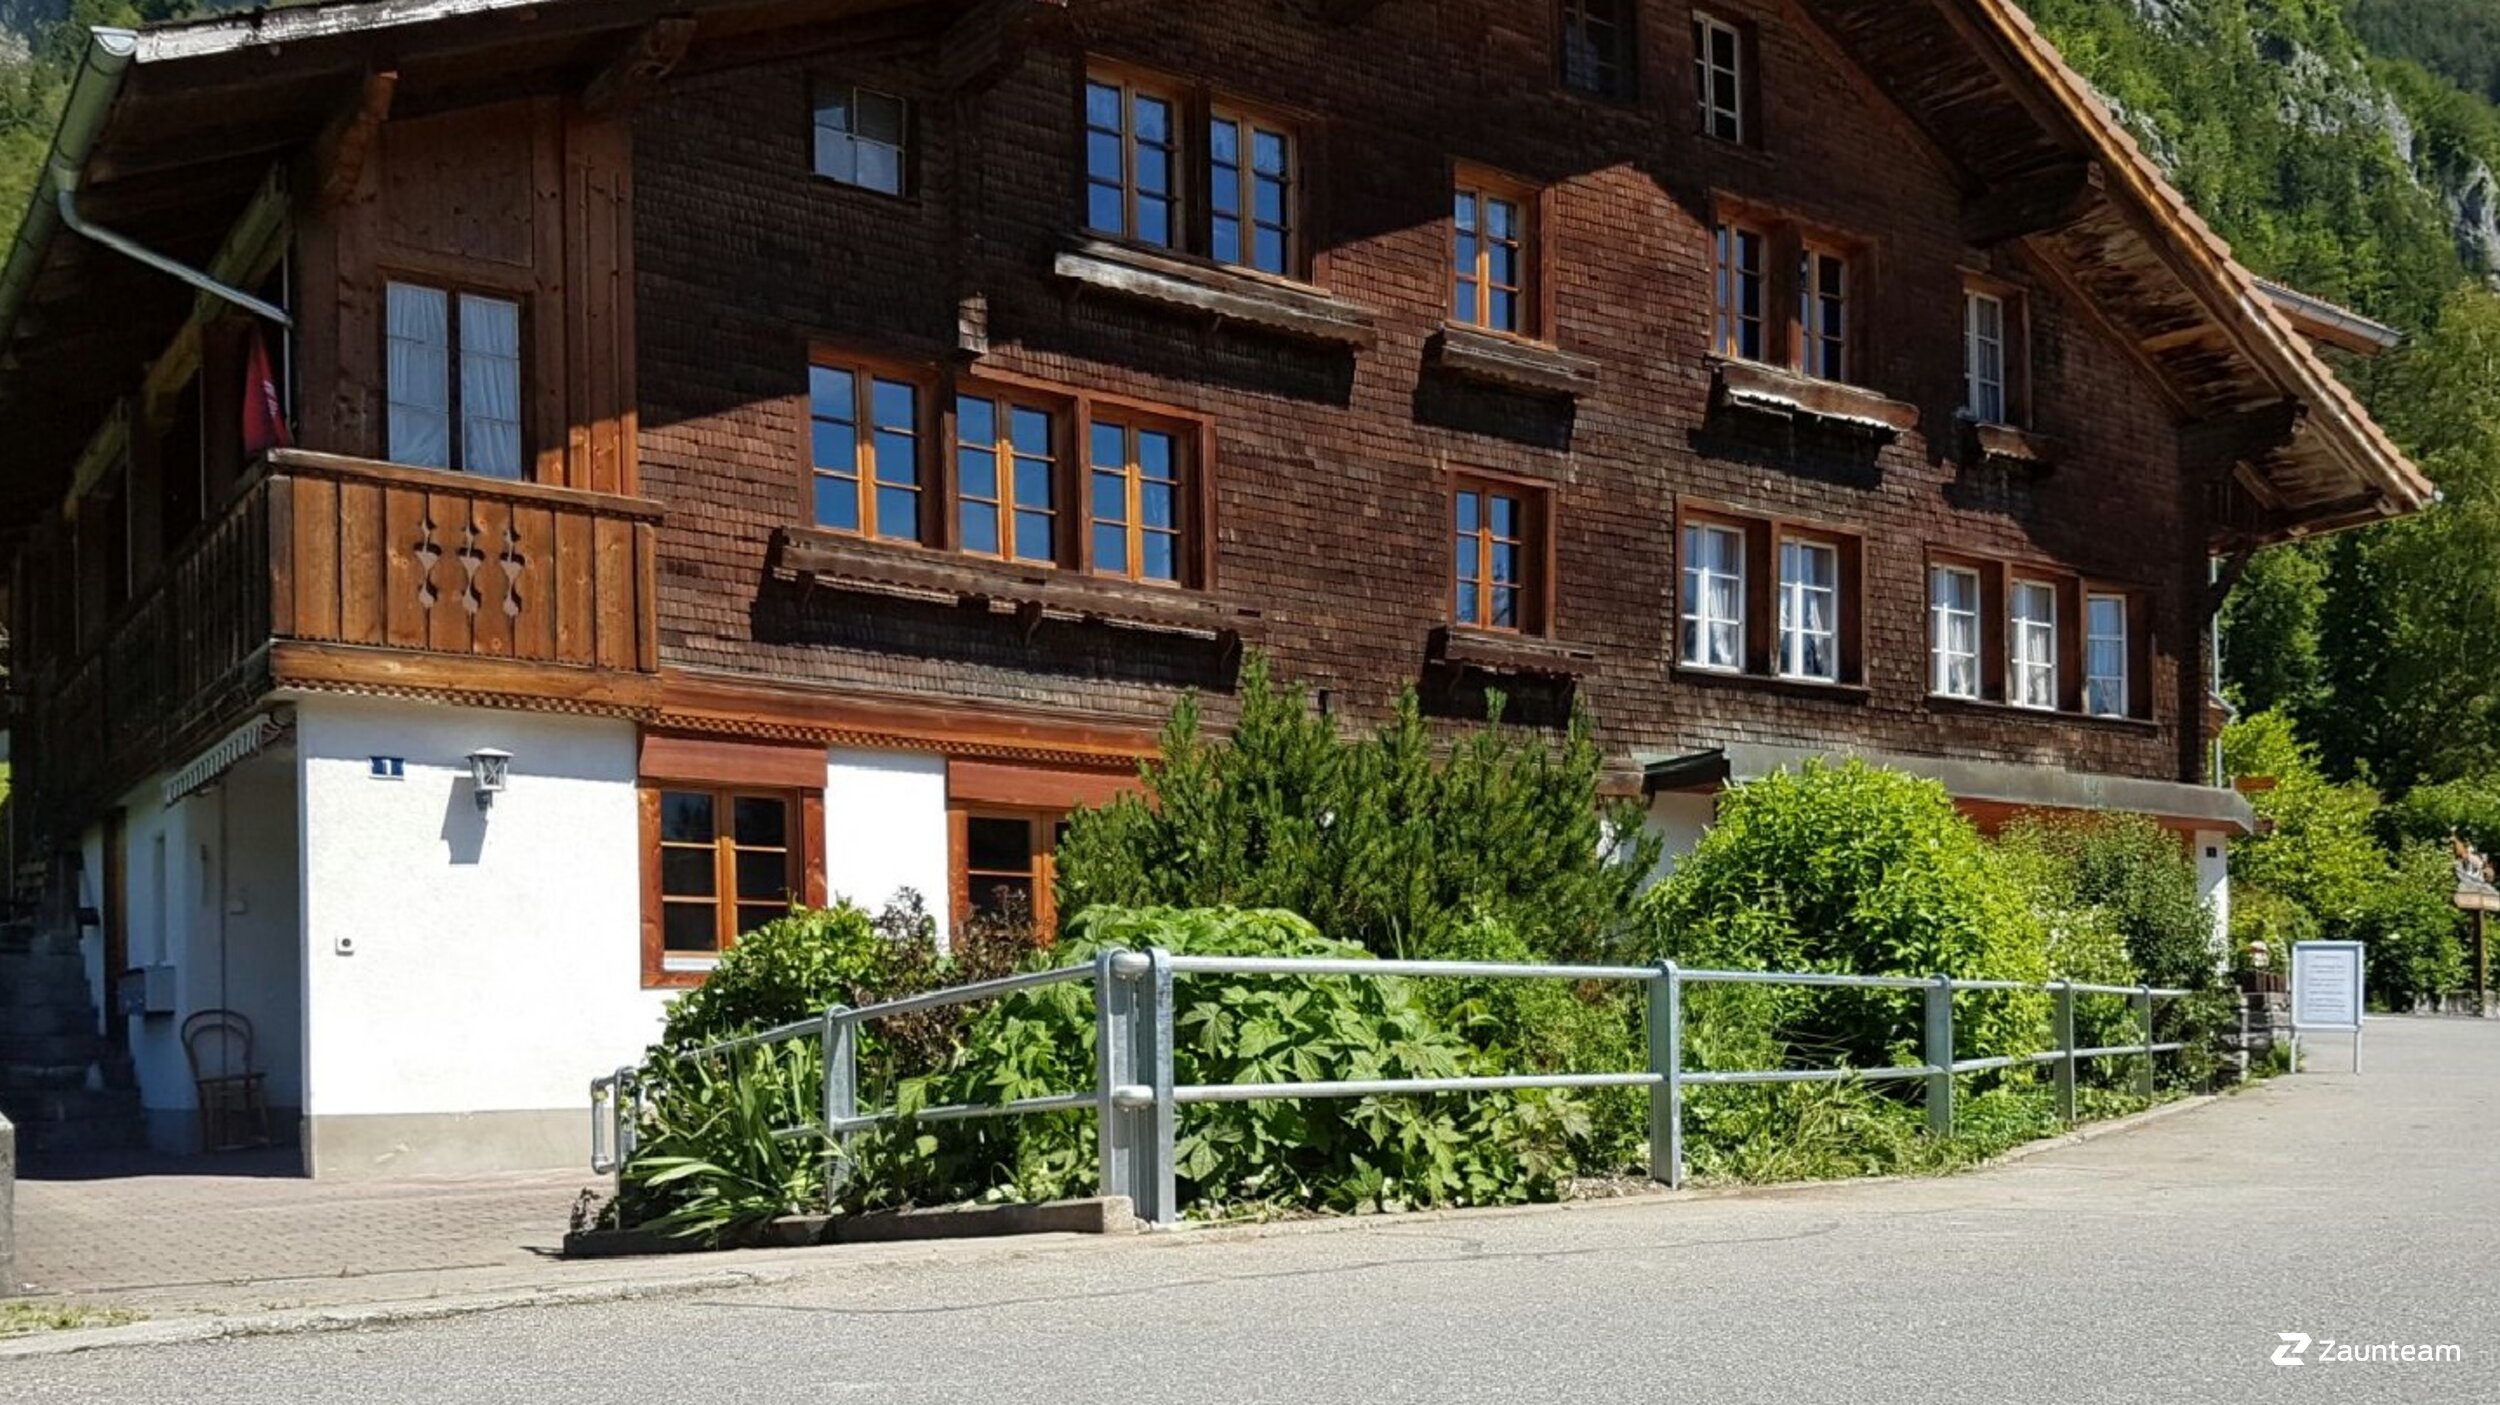 Wegzäune aus dem 2016 in 3855 Schwanden, Brienz Schweiz von Zaunteam Berner Oberland.